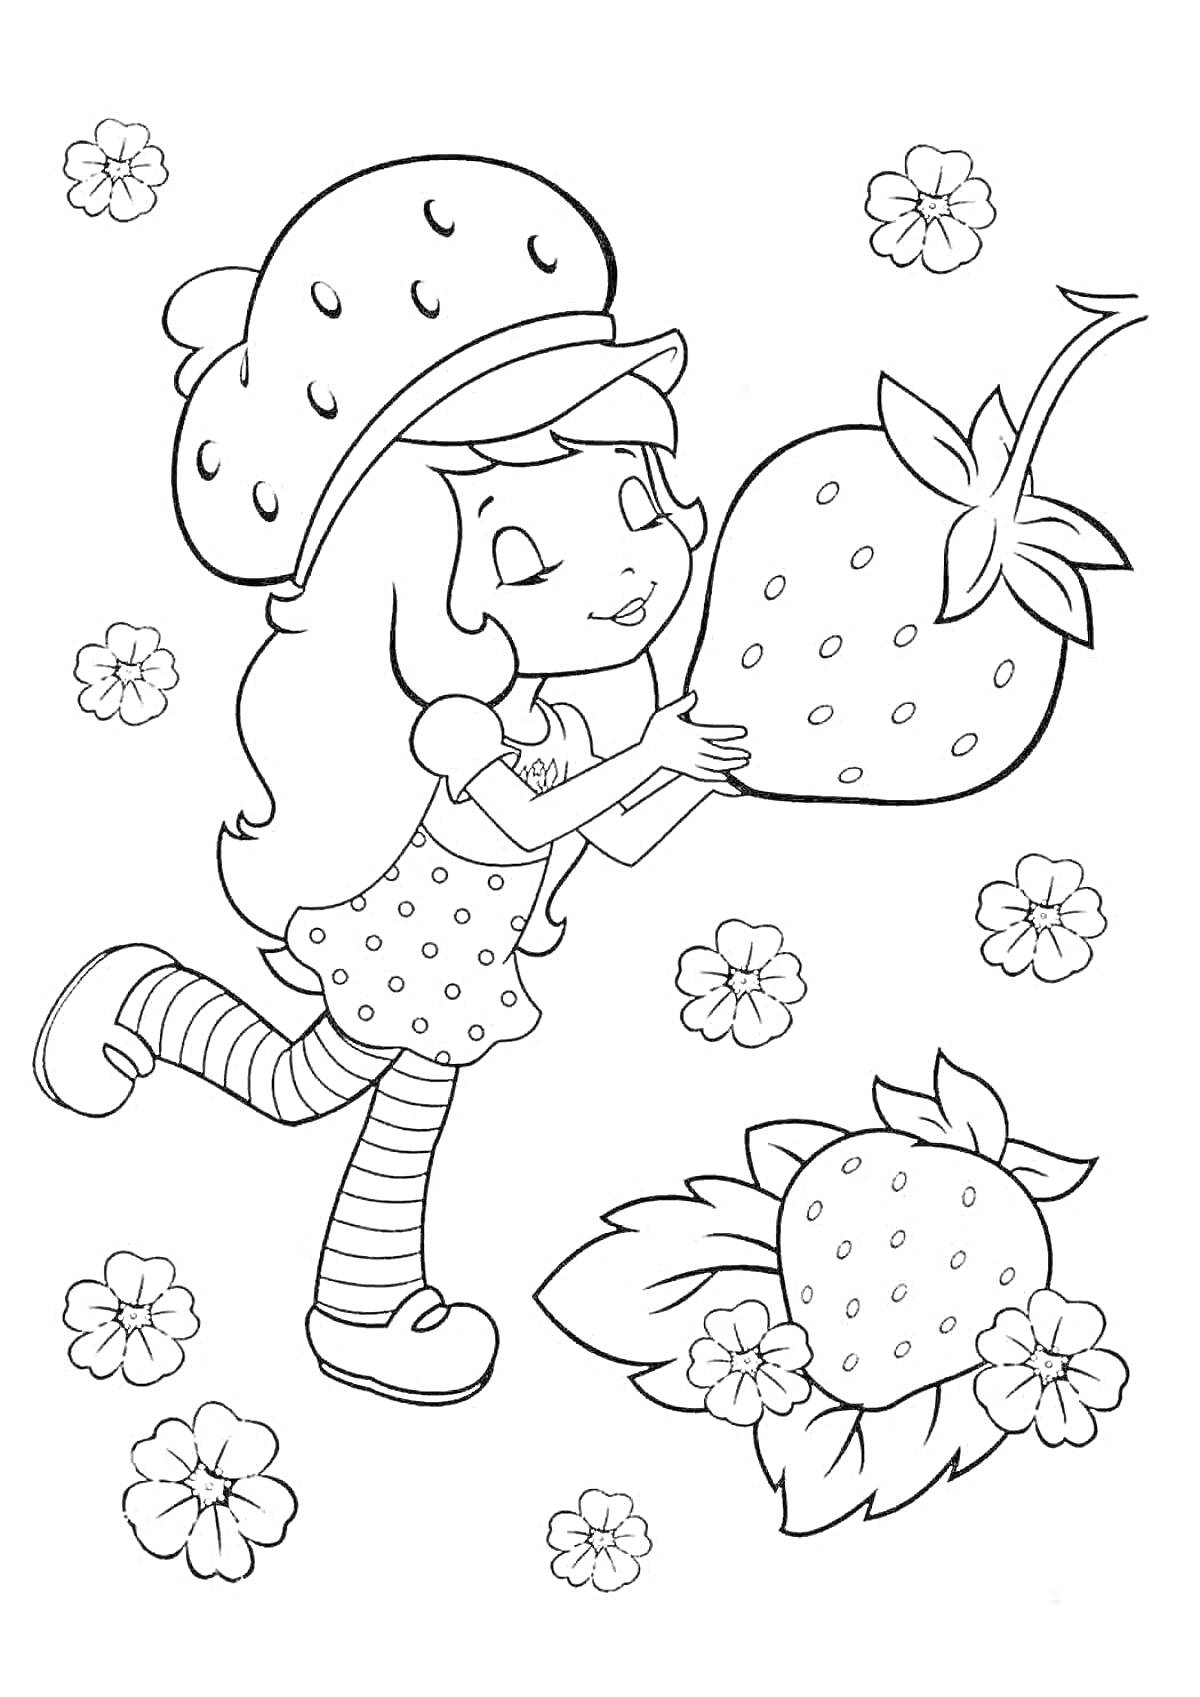 Раскраска Девочка с клубникой, в шляпке и полосатых чулках, с цветочками вокруг